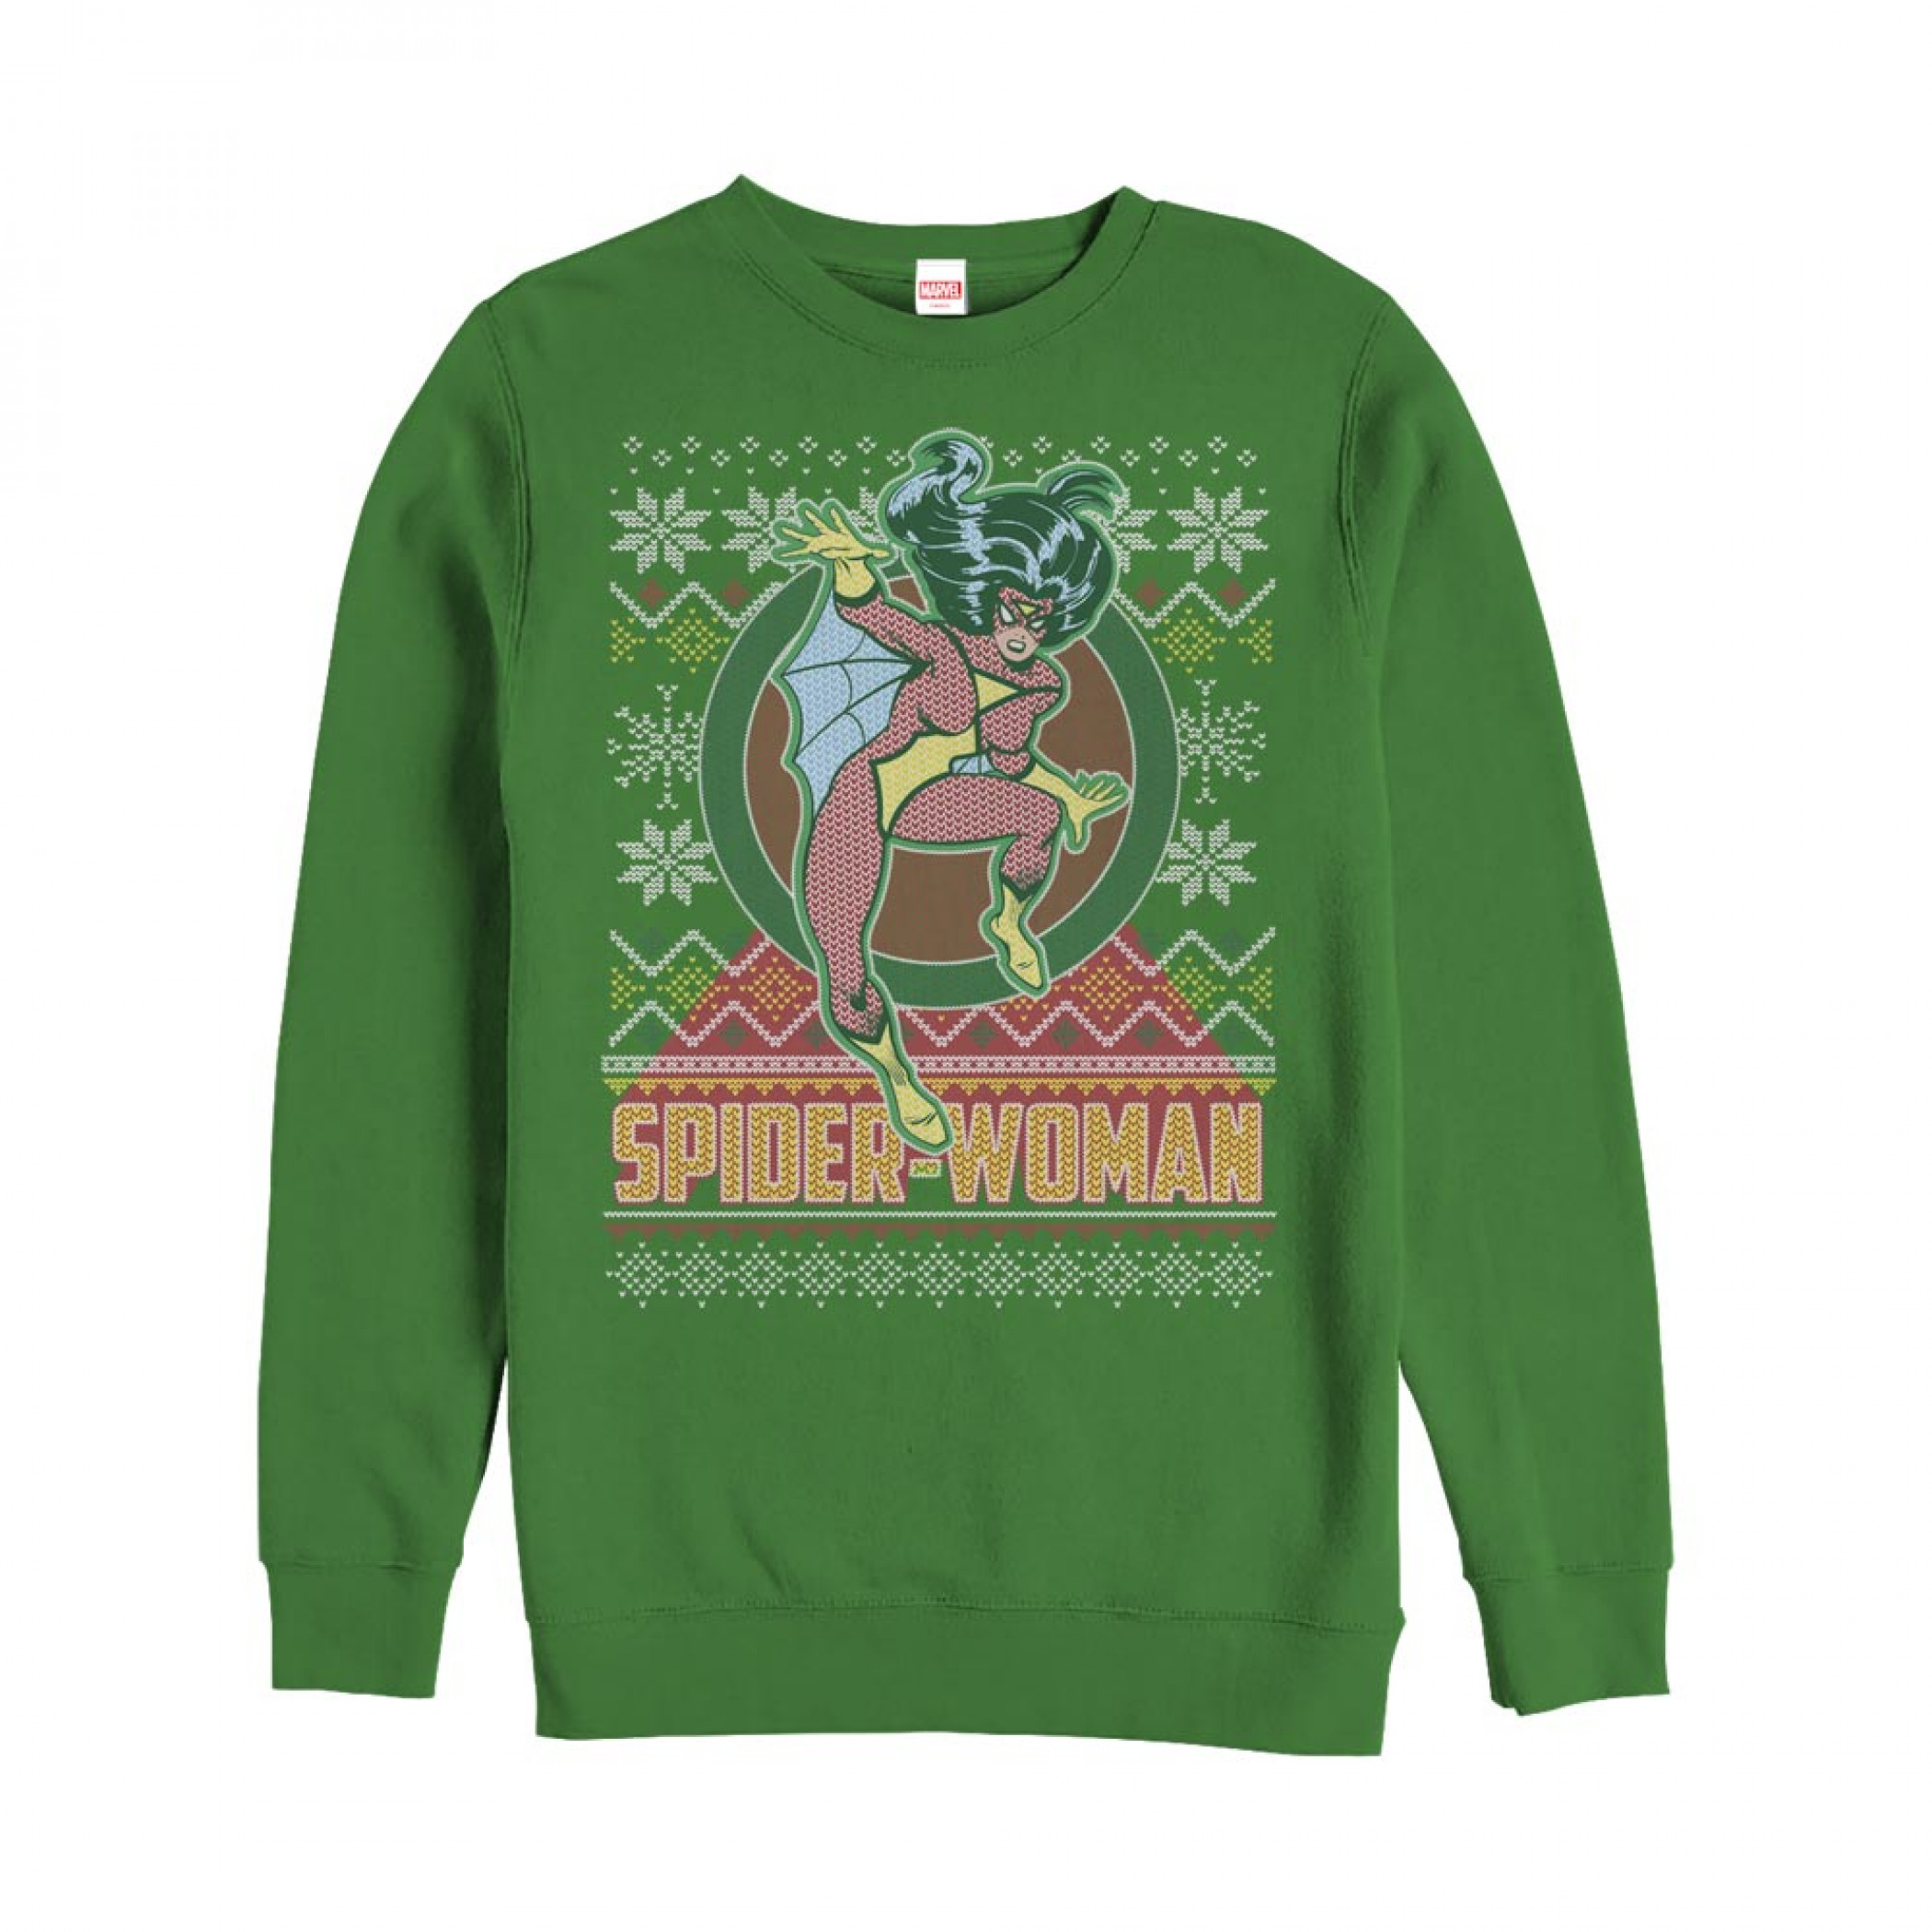 Spider-Woman Ugly Christmas Sweatshirt